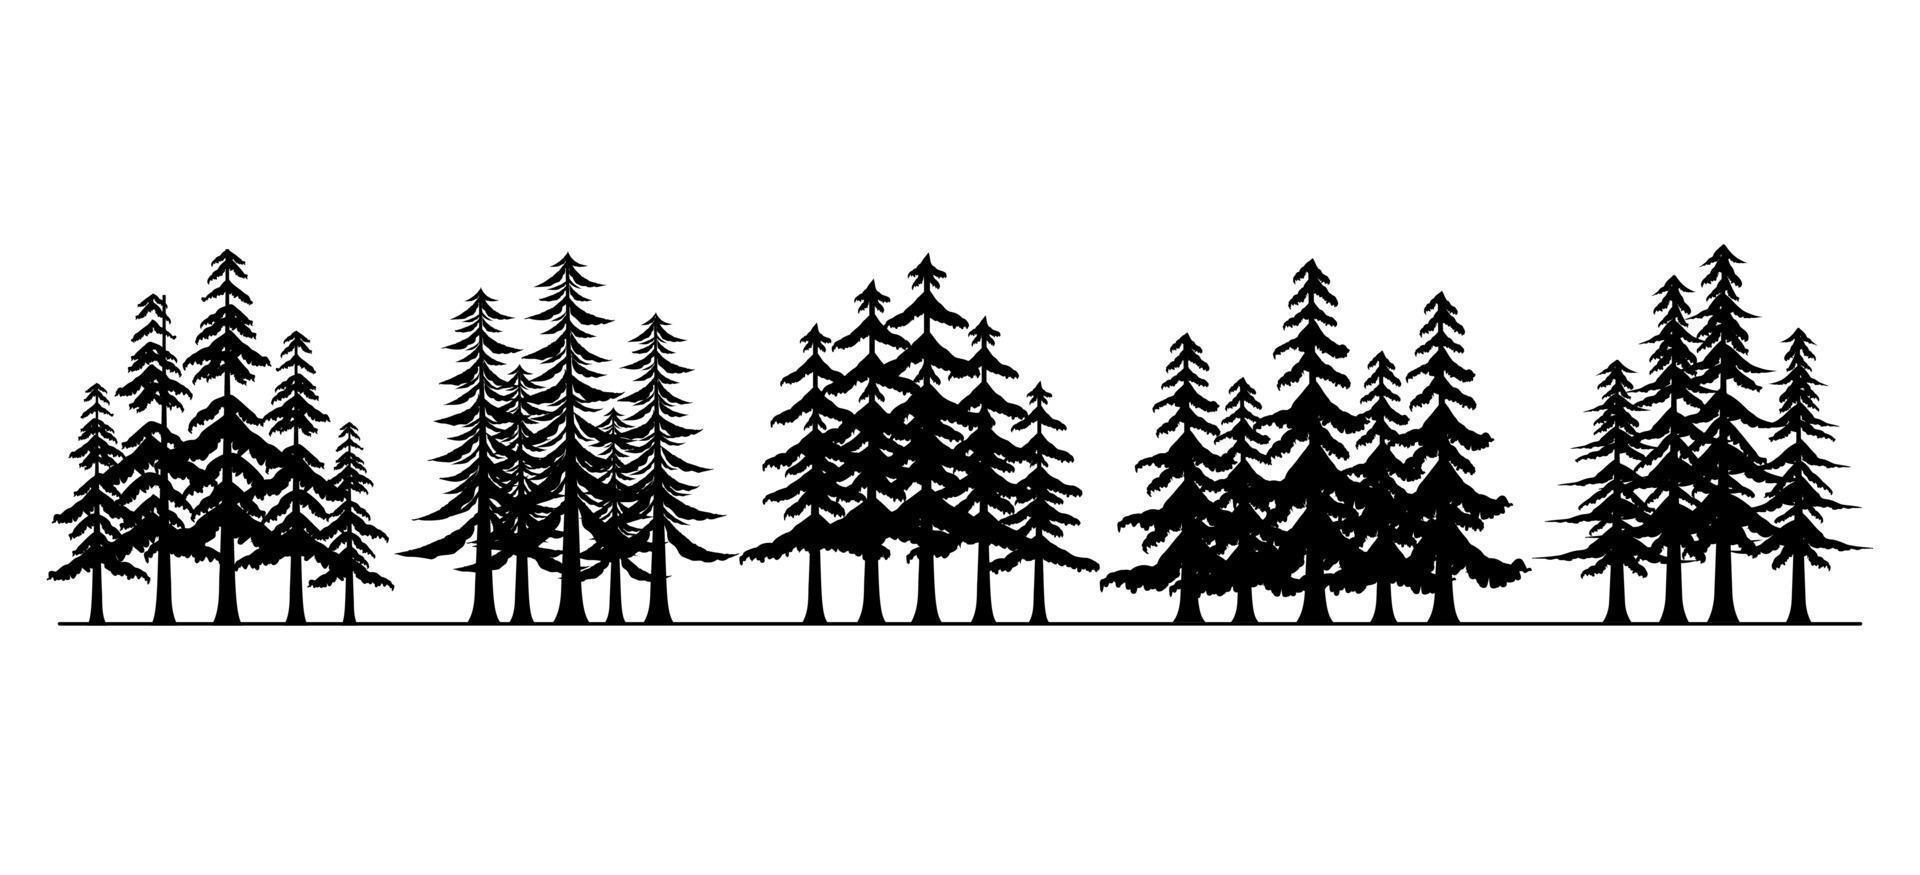 groep dennen, bos bomen silhouet collectie vector